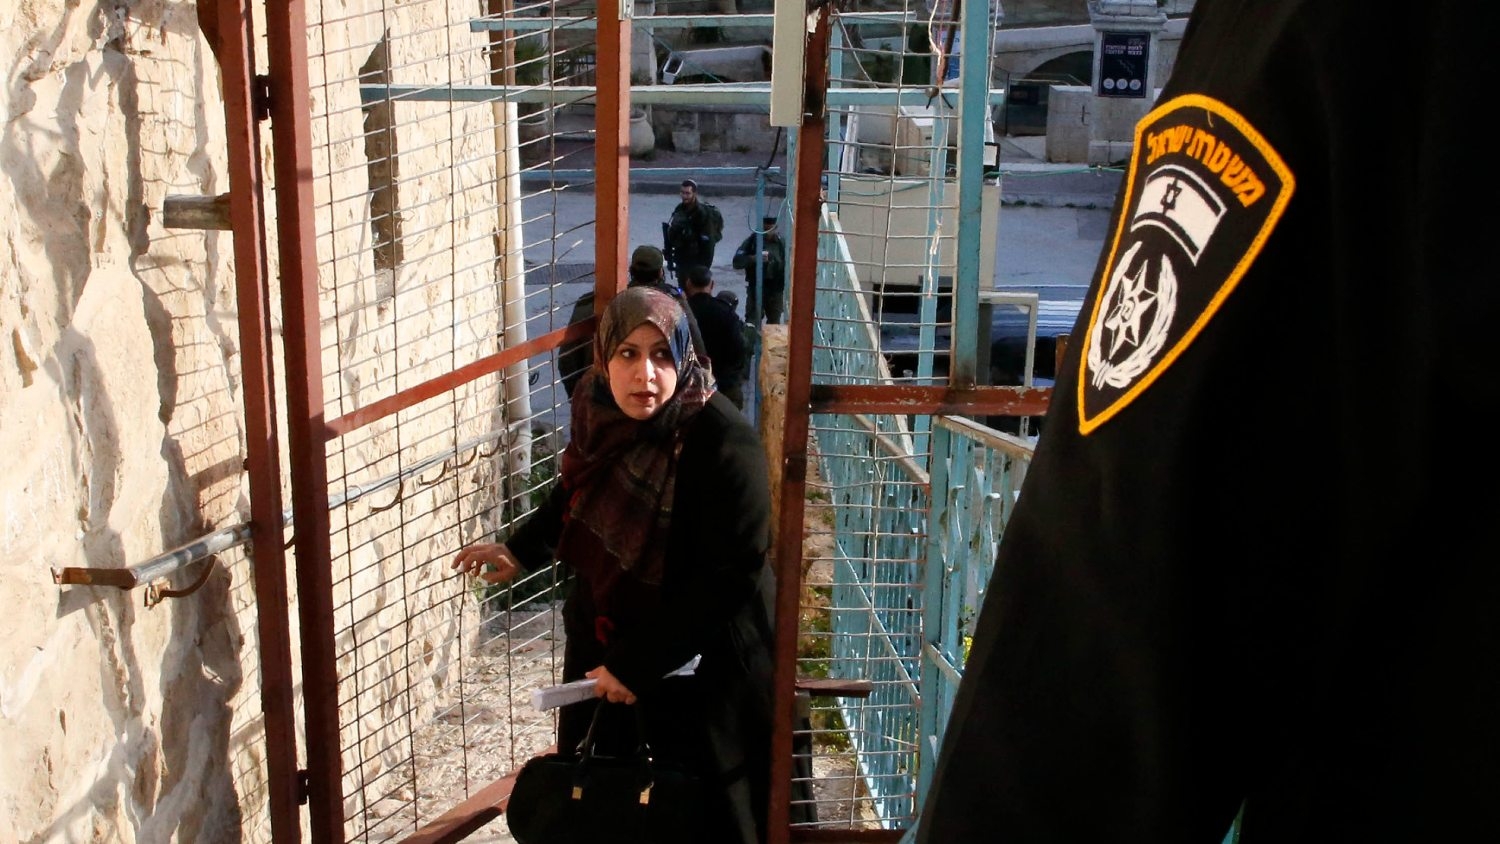 Carceri speciali, tribunali militari, detenzione amministrativa: i palestinesi, un popolo imprigionato